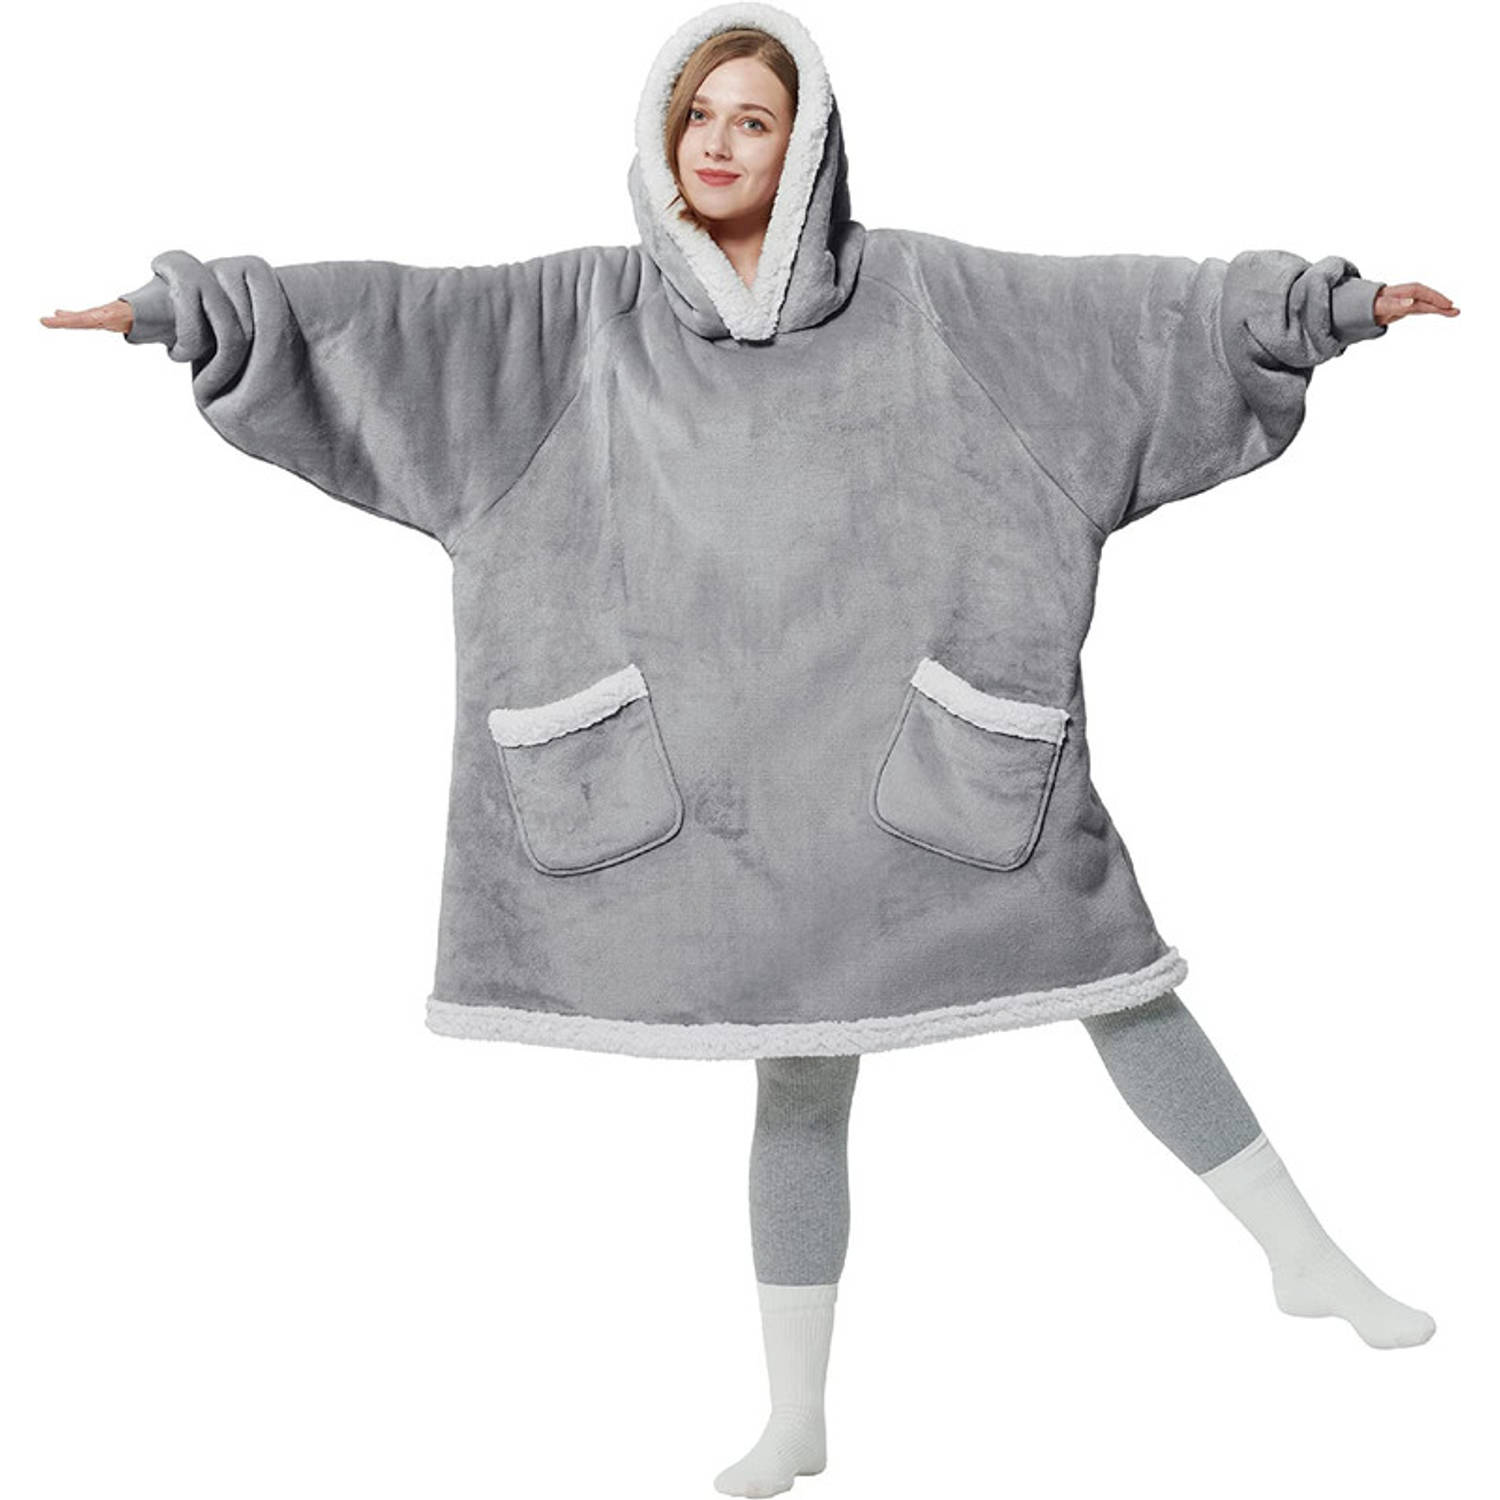 Hoodie deken met Mouwen - One size fits all - Dubbele voering - Fleece Deken - TV deken - Warmte deken